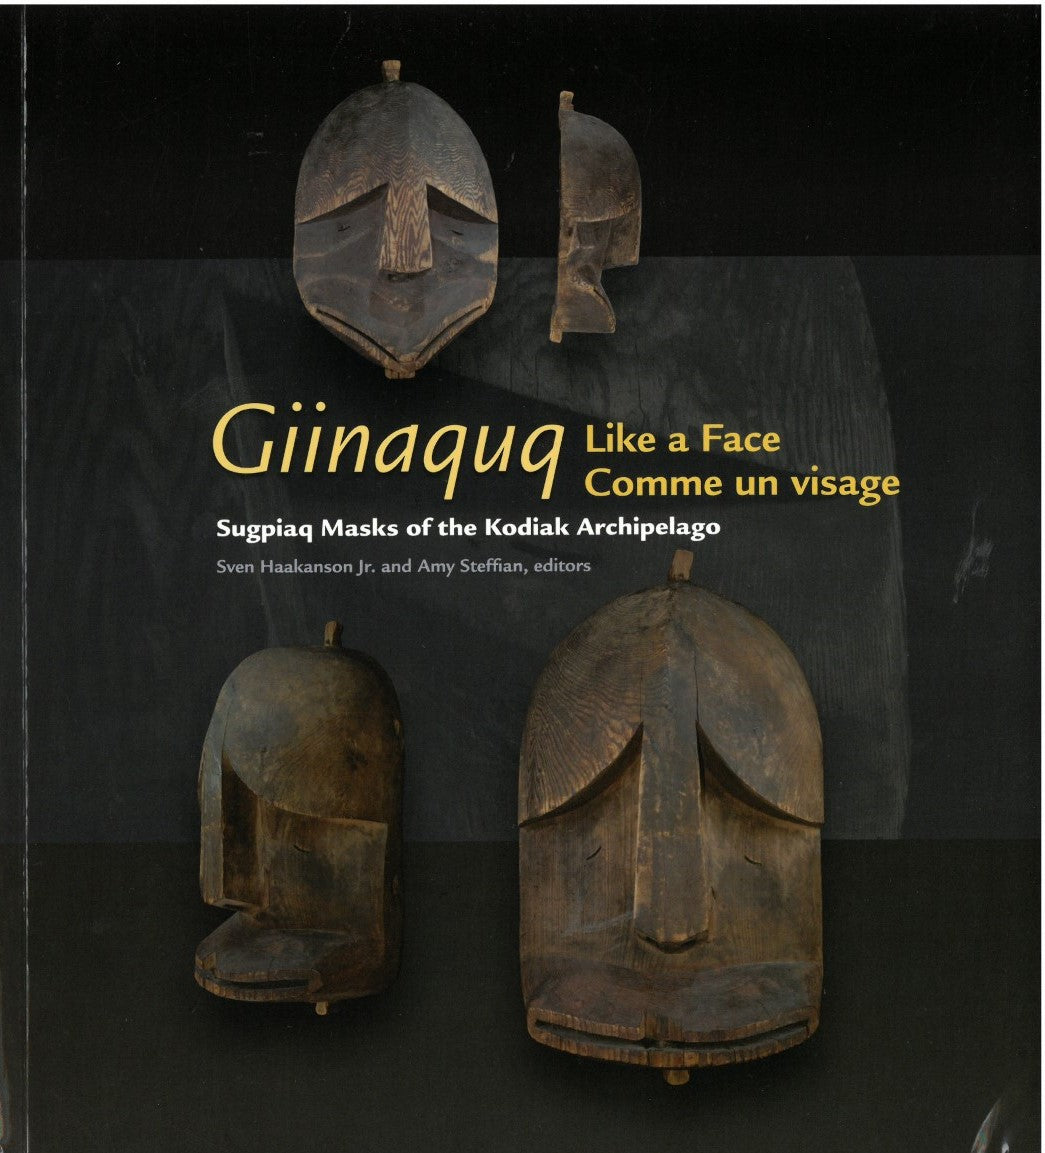 Giinaquq, Like a Face: Suqpiaq Masks of the Kodiak Archipelago by Sven D. Haakanson Jr. and Amy F. Steffian